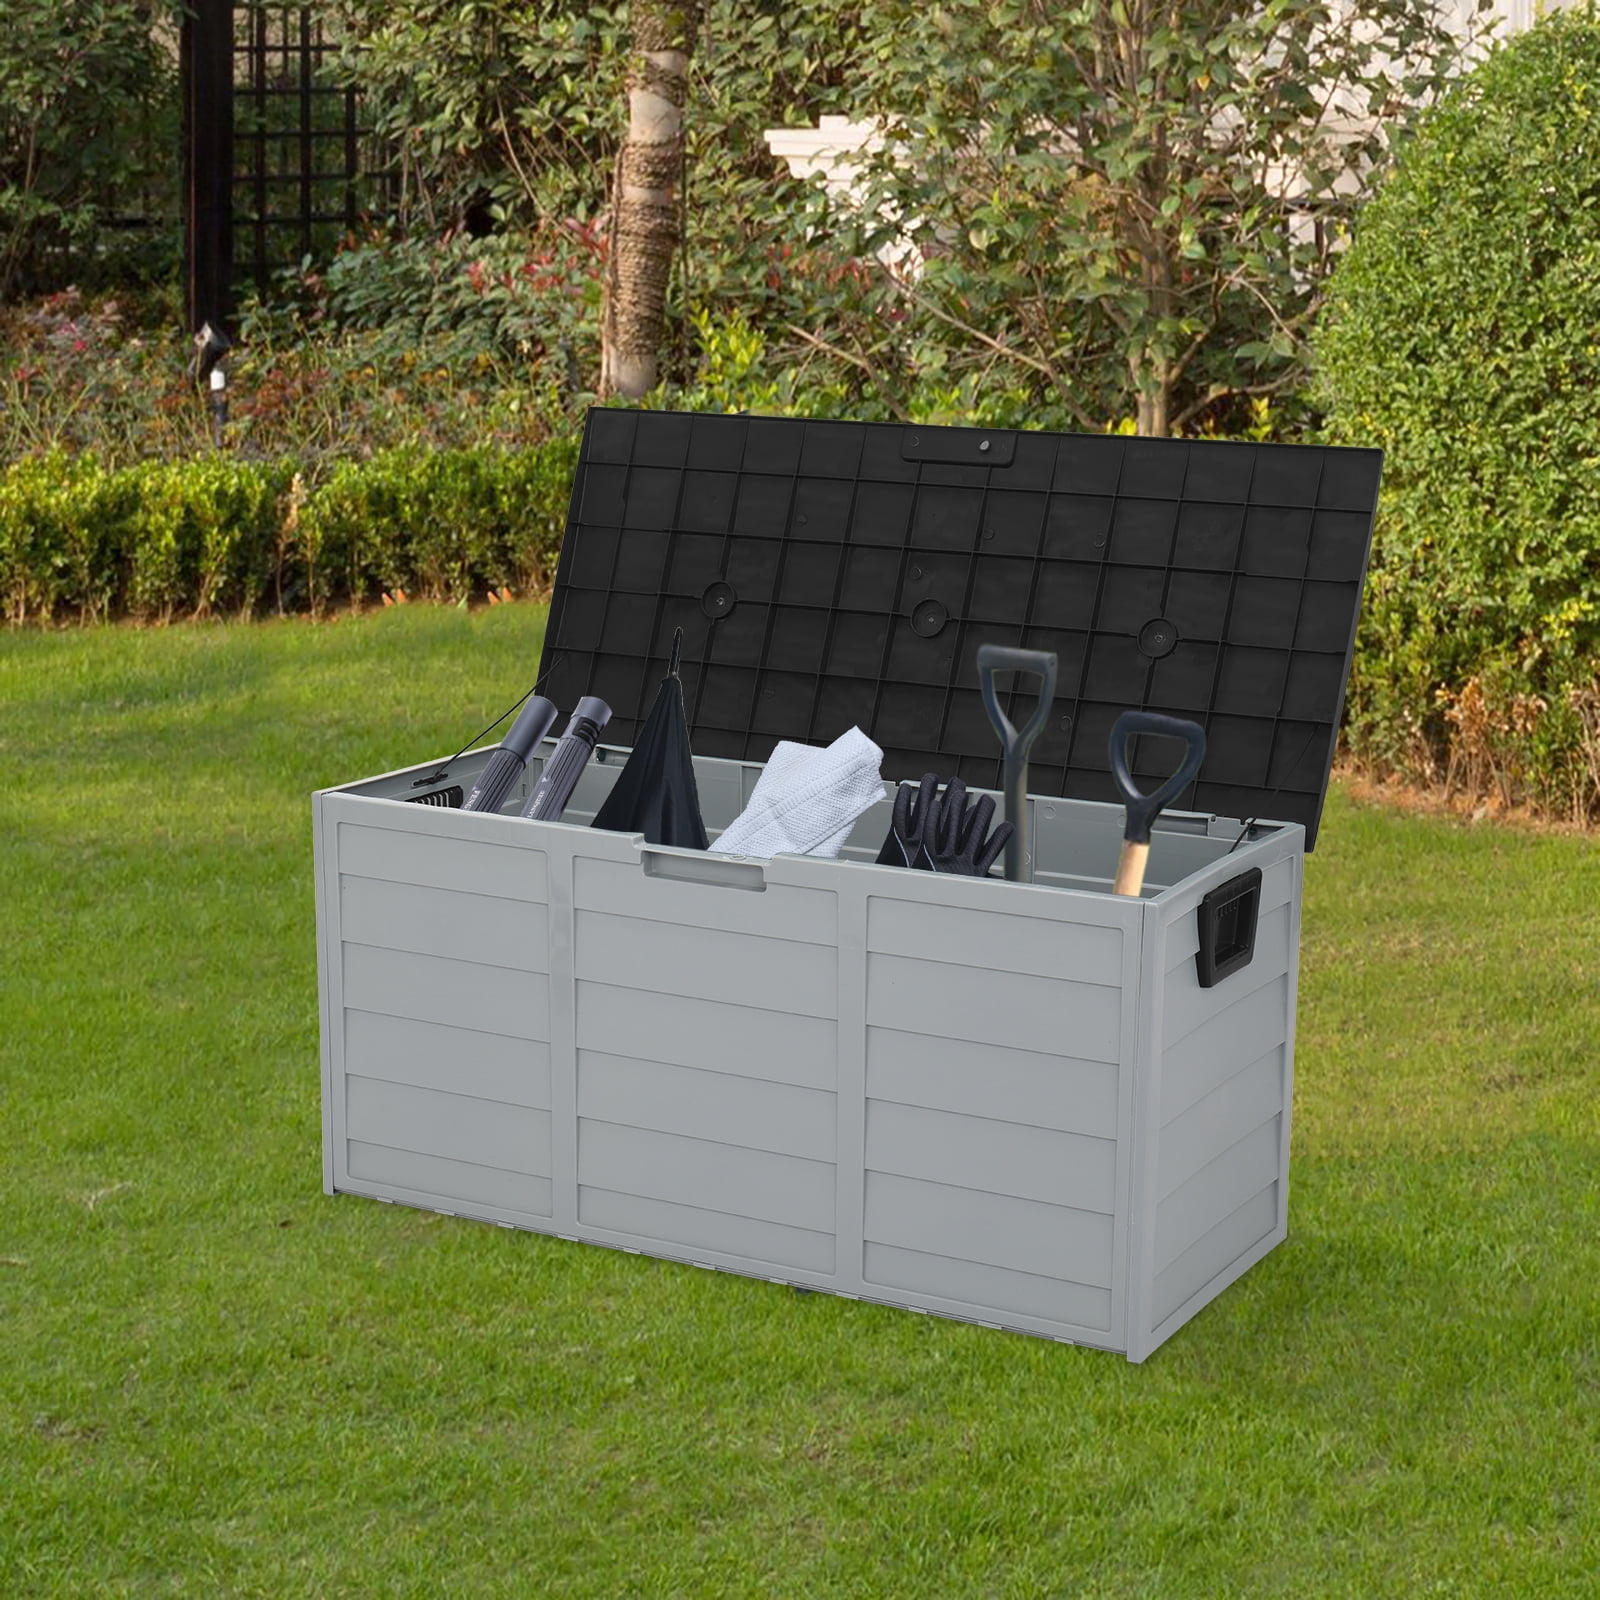 Black Outdoor Storage Bench Weather-Resistan 44 x 21.3 x 19.3 Inches Outdoor Garden Plastic Storage Box,75gal 260L Garden Storage Chest with Wheels